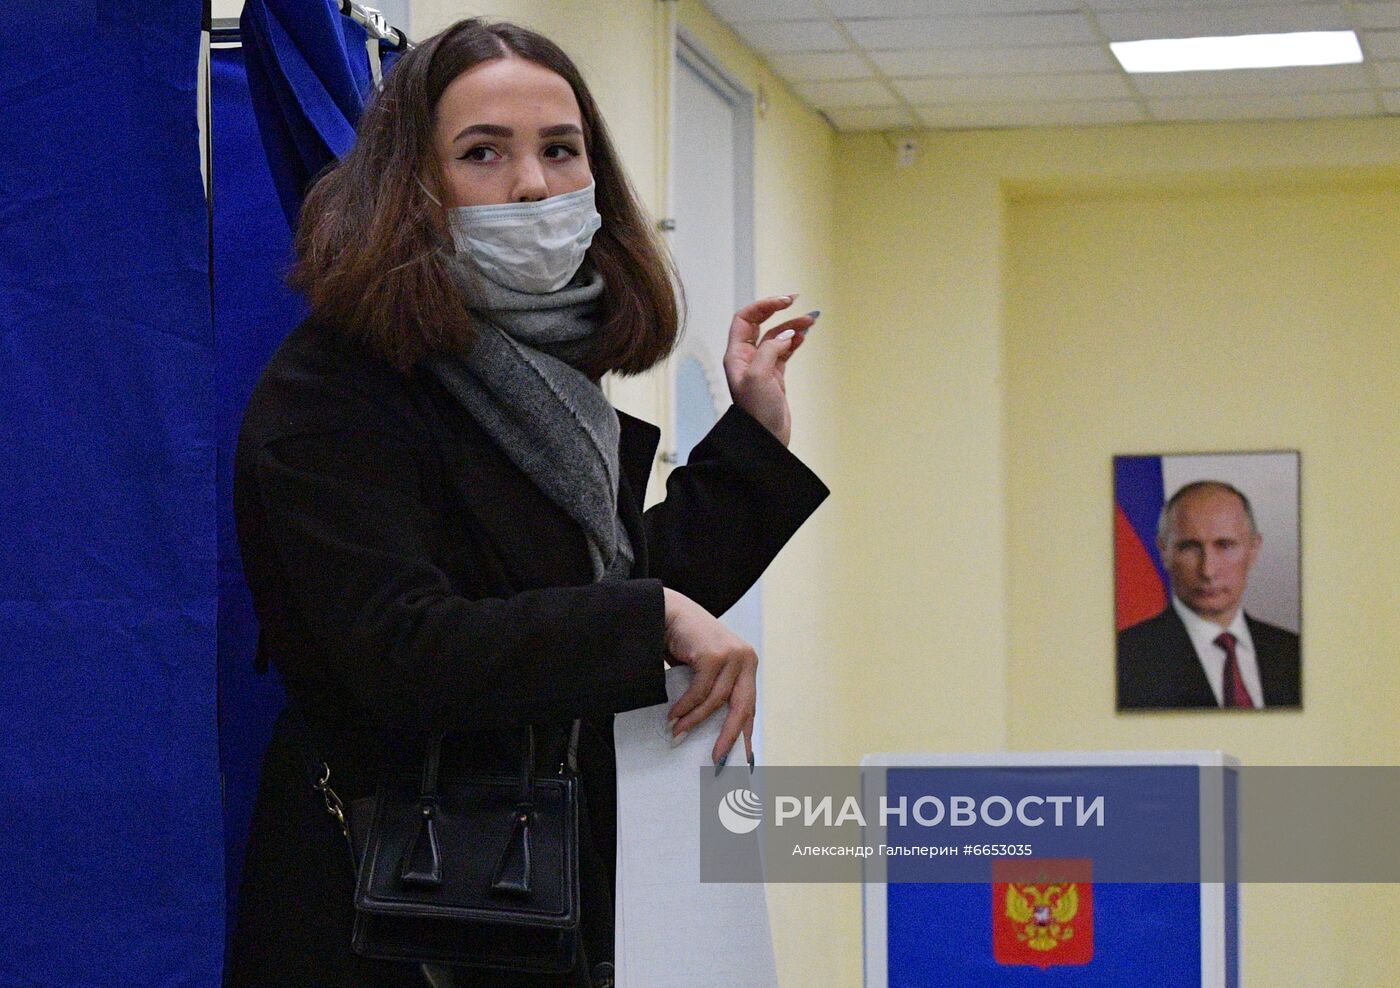 В России стартовали выборы депутатов Госдумы, законодательных органов и глав субъектов федерации